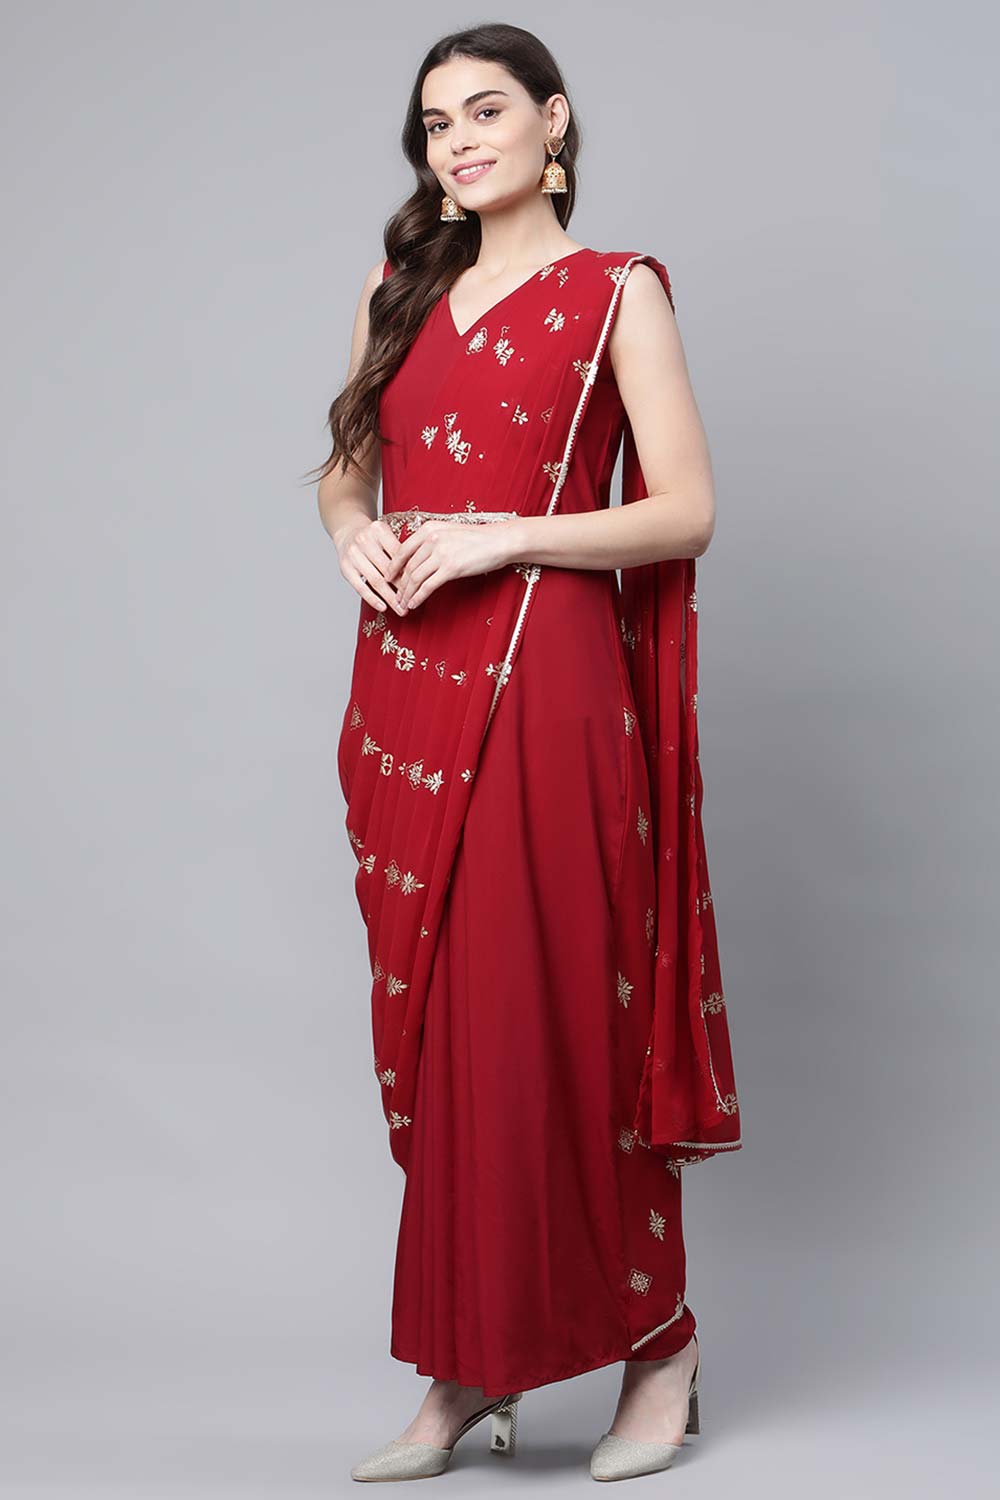 Maroon Crepe Georgette Printed Saree Dress With Printed Pallu